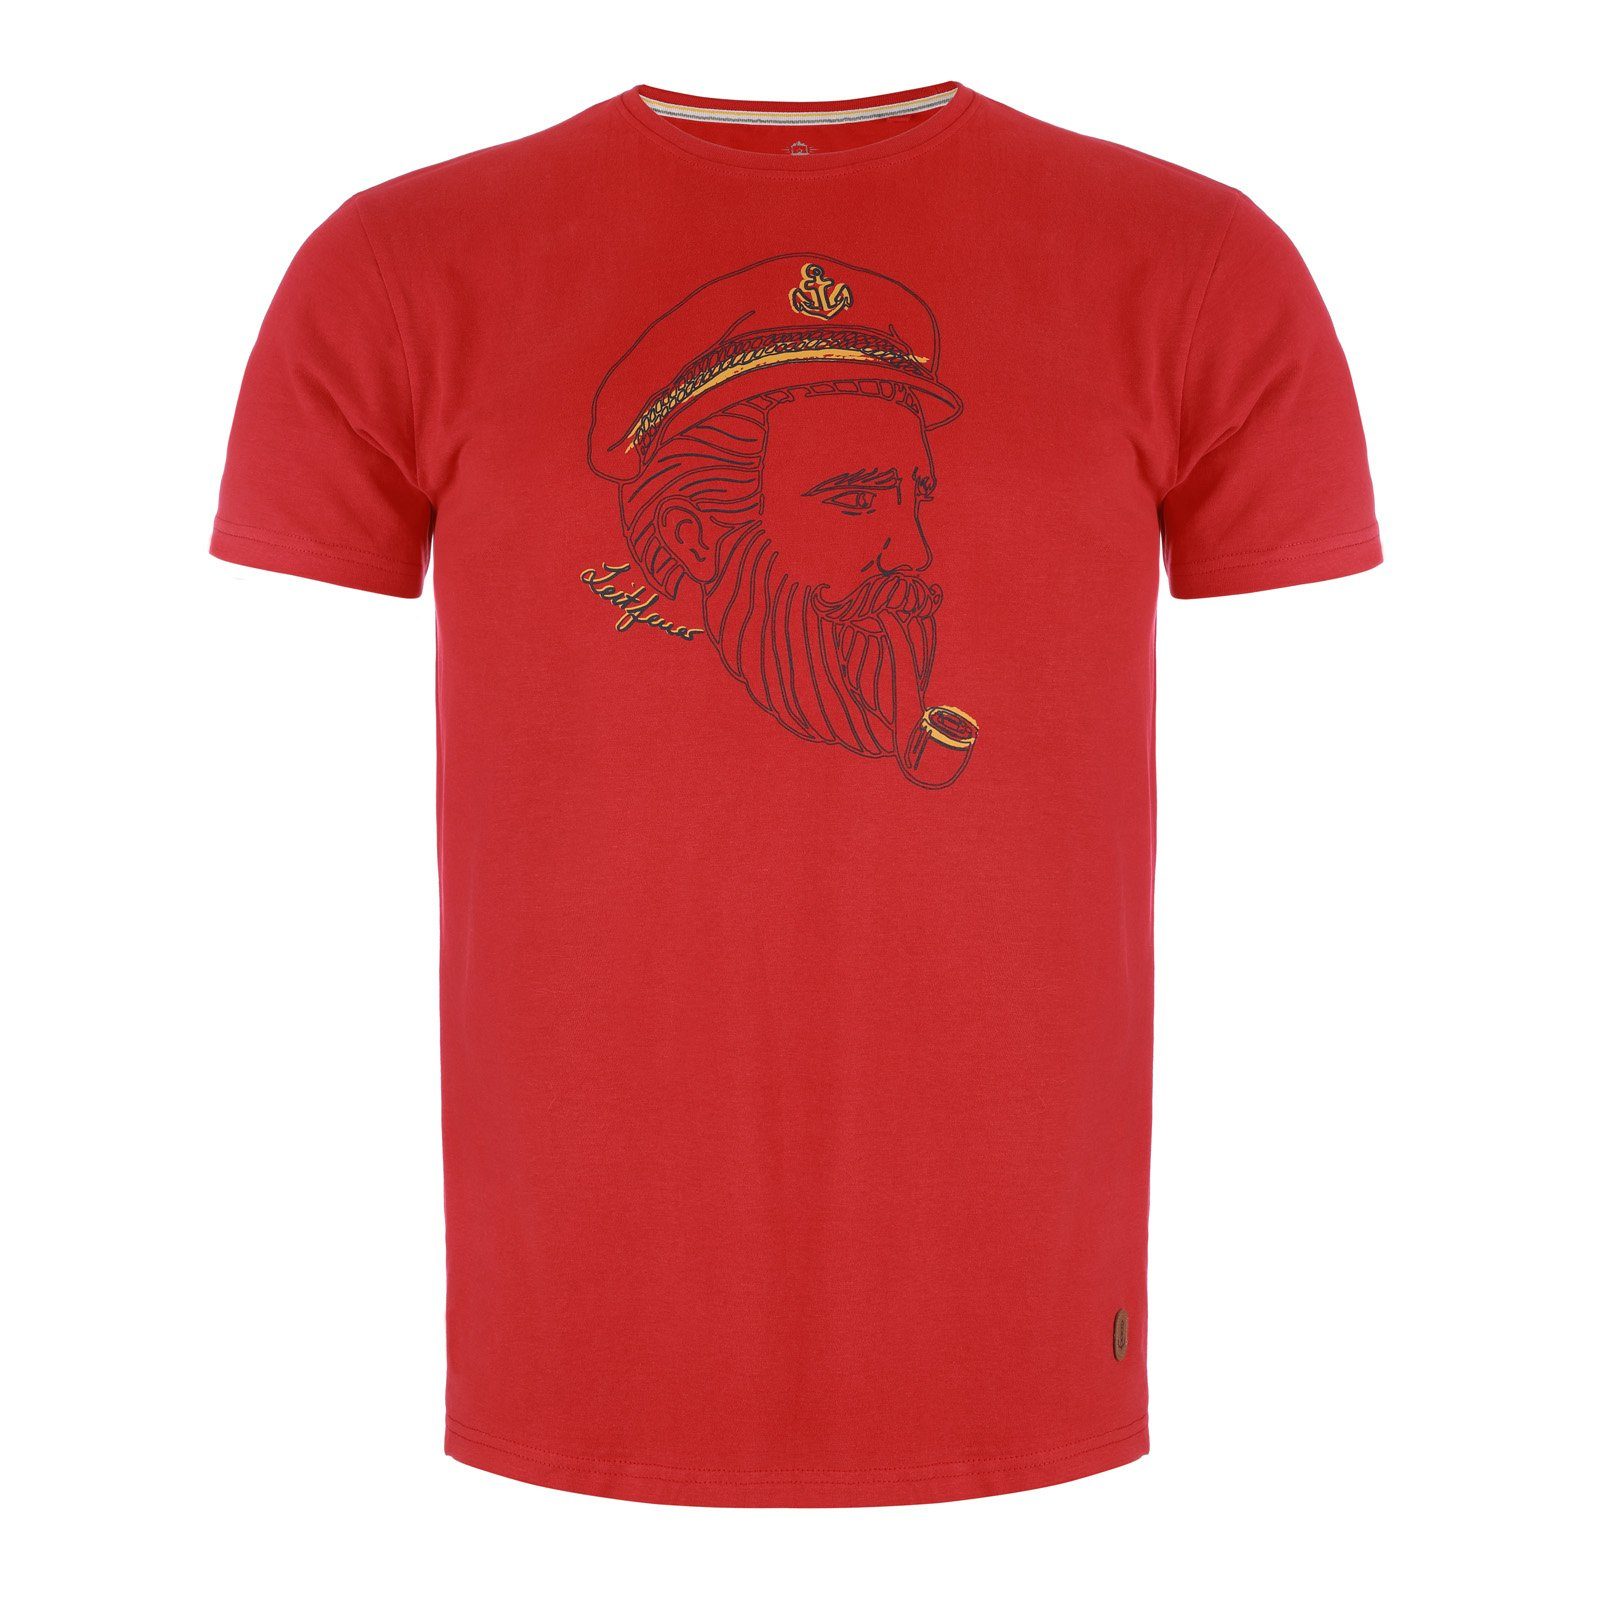 Leitfeuer T-Shirt Herren 1/2 Arm Shirt Rundhals mit Kapitän-Seemann-Print samtig weich rot